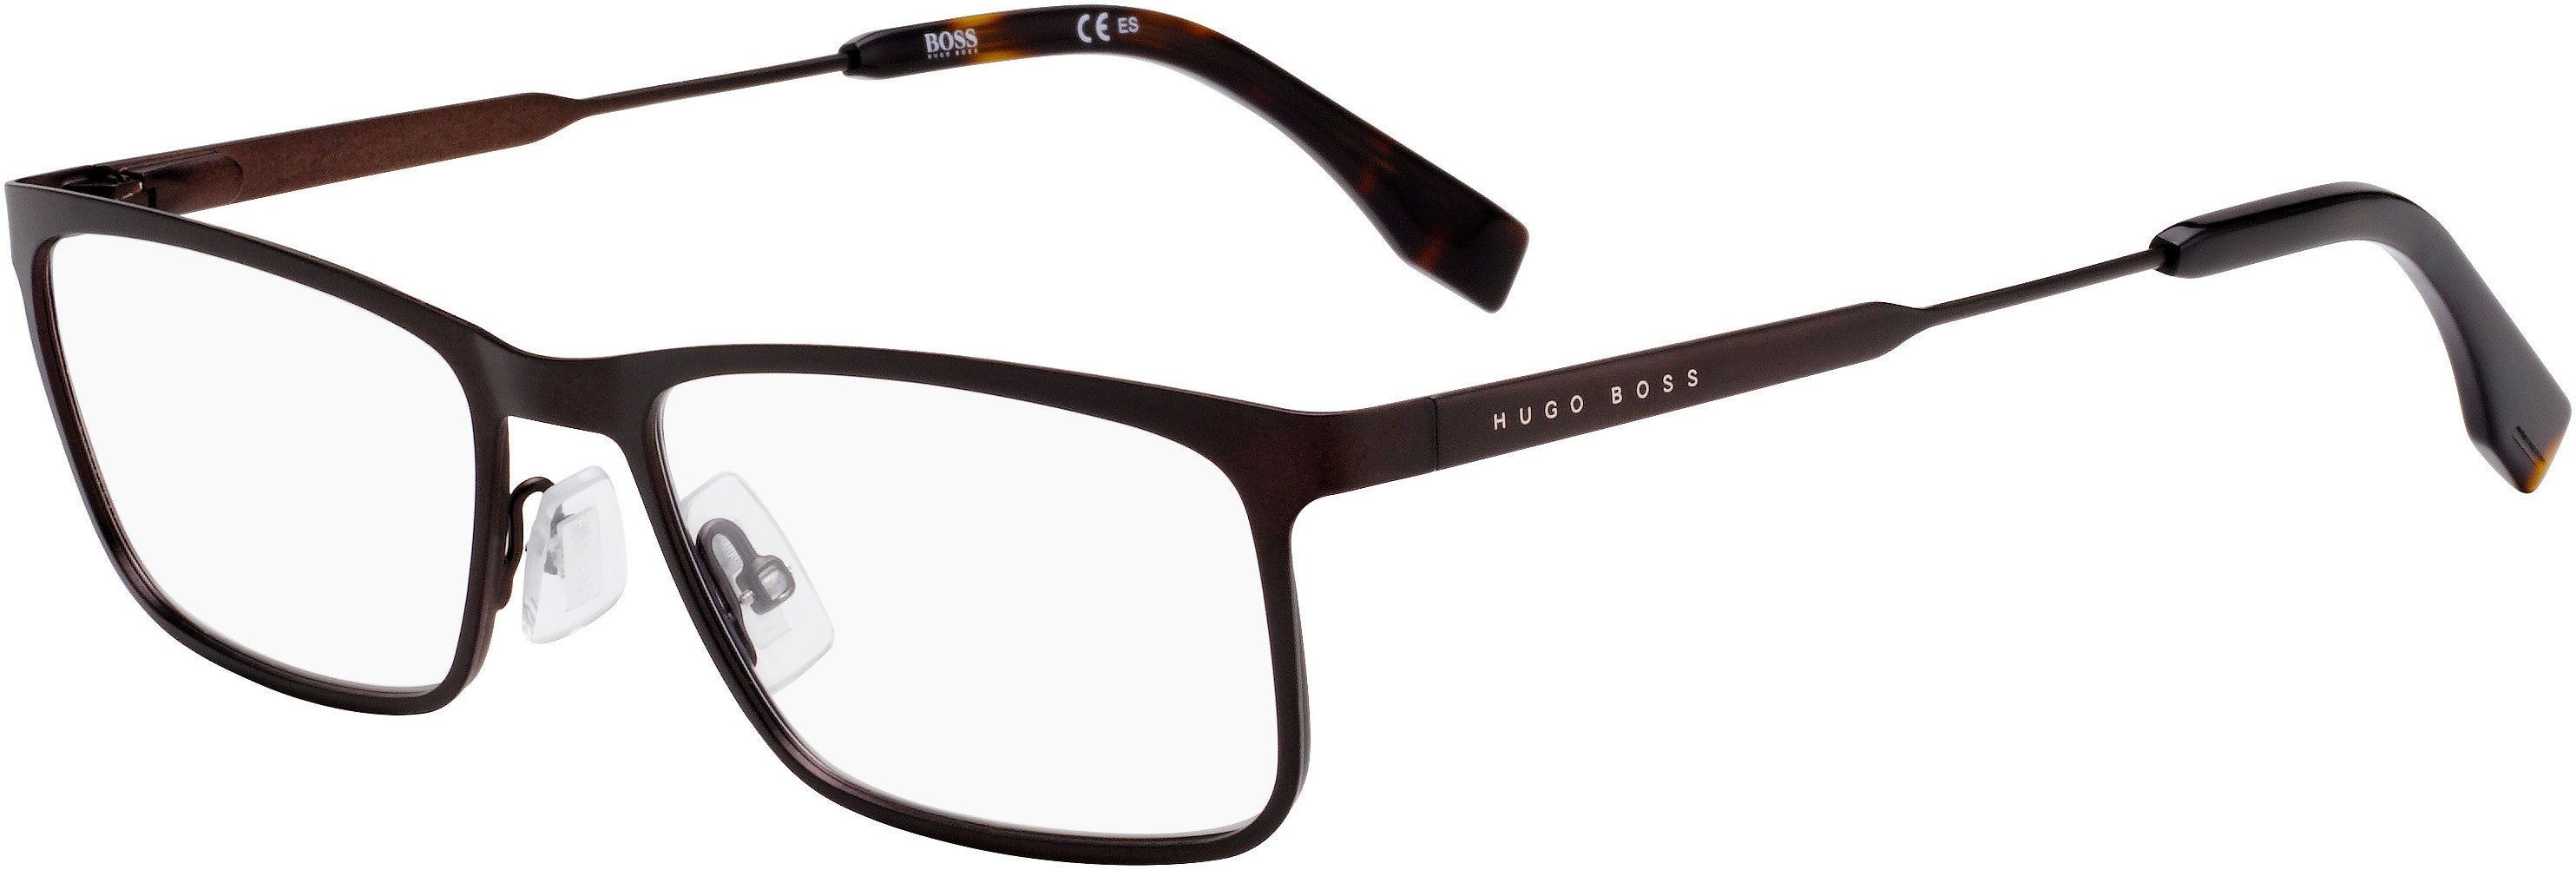 Boss (hub) Boss 0997 Rectangular Eyeglasses 04IN-04IN  Matte Brown (00 Demo Lens)